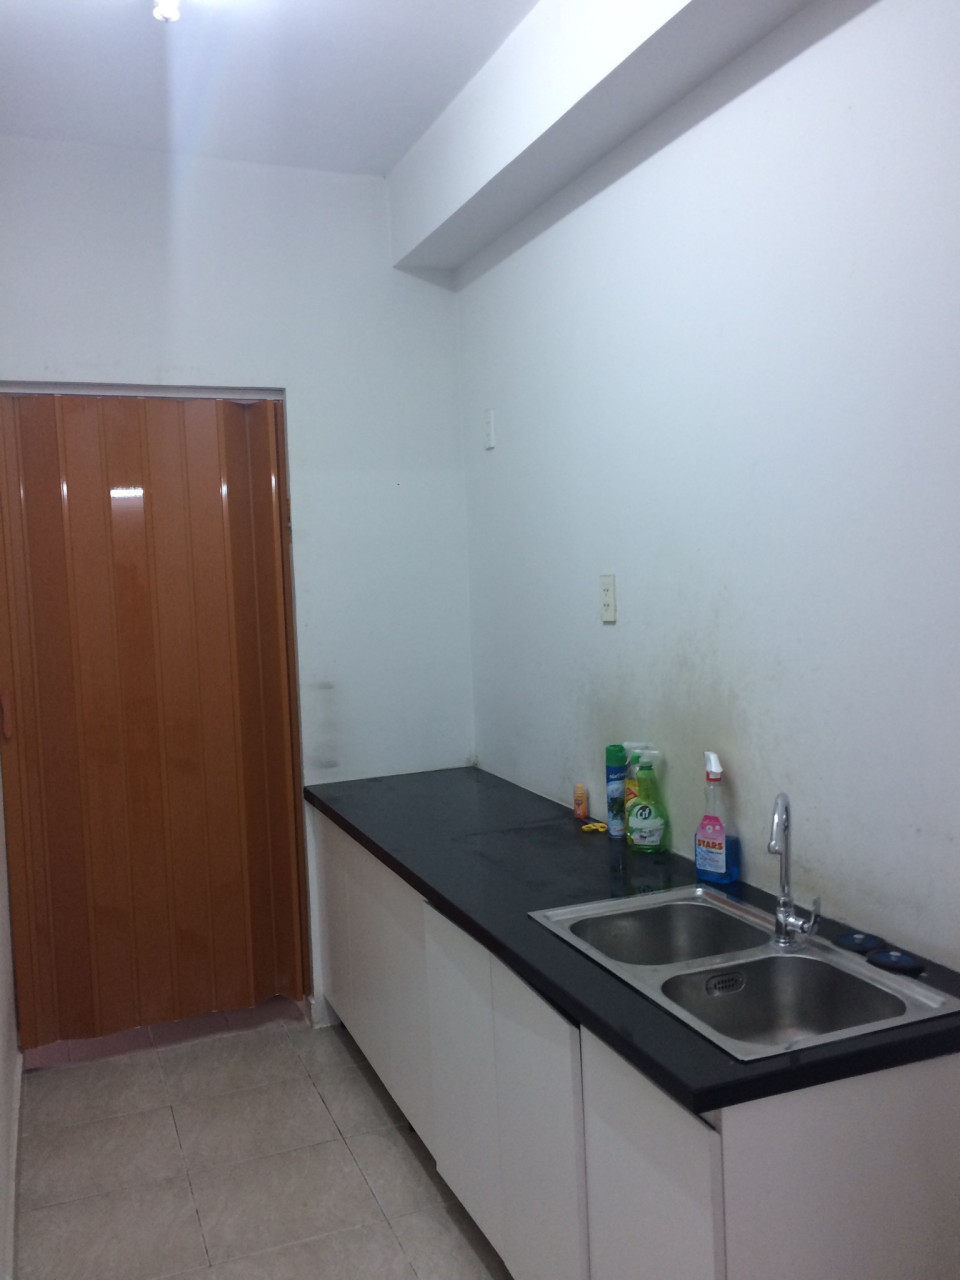 Cho thuê căn hộ Ehome 3, Bình Tân đầy đủ nội thất, DT 67m2, 2PN, giá 7 tr/th, LH: Linh 0903053801